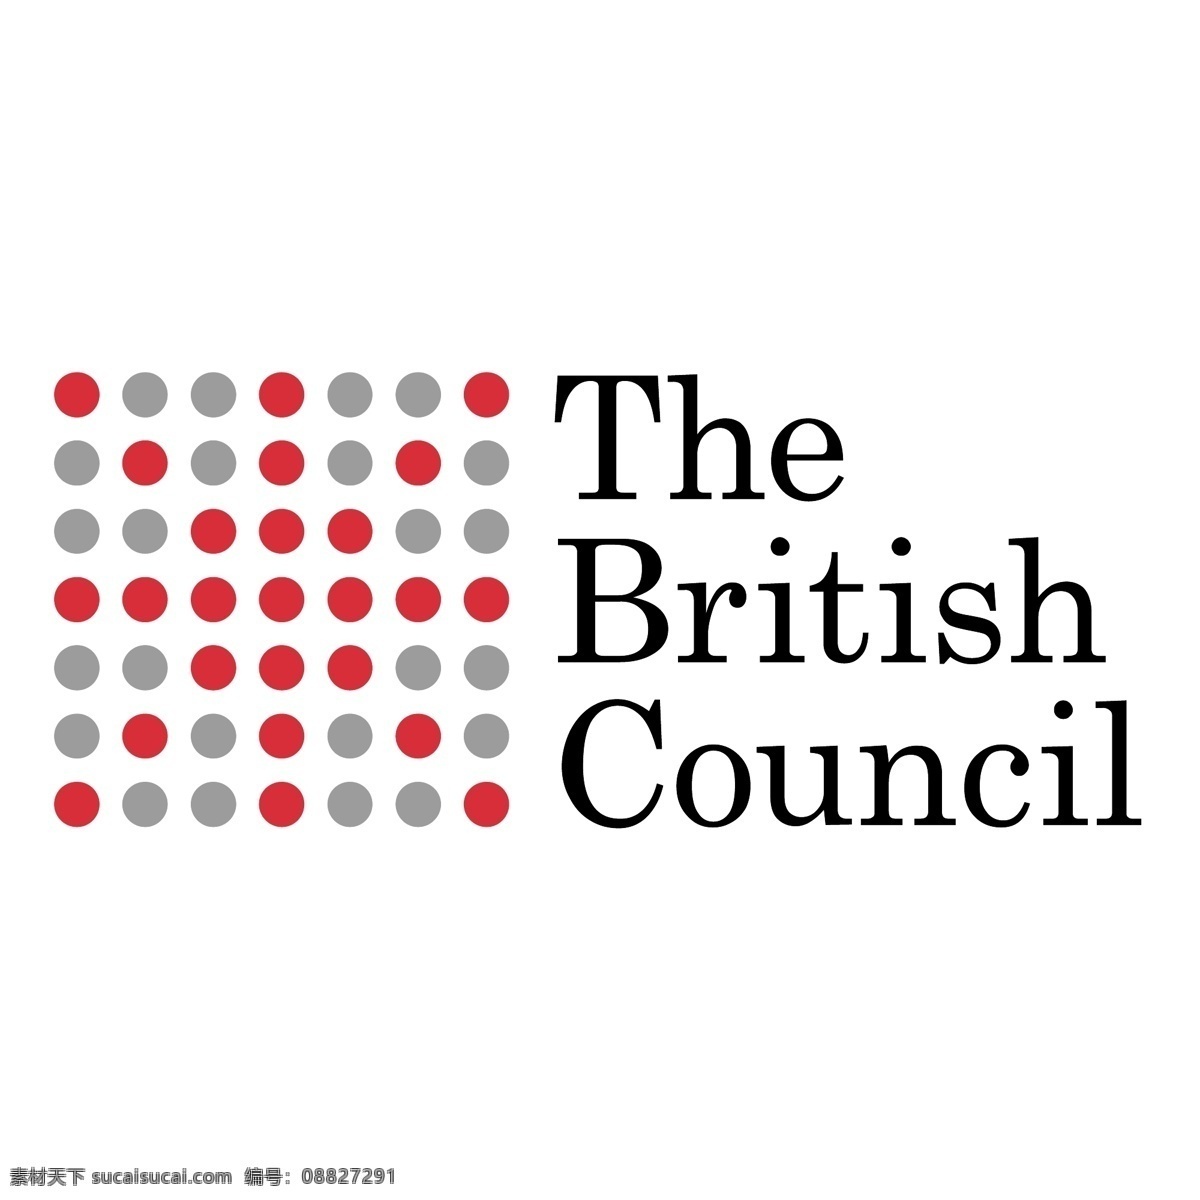 英国文化委员会 标志 英国的 英国议会 委员会 英国 文化 协会 矢量 logo 向量 艺术 理事会 免费 矢量图 建筑家居